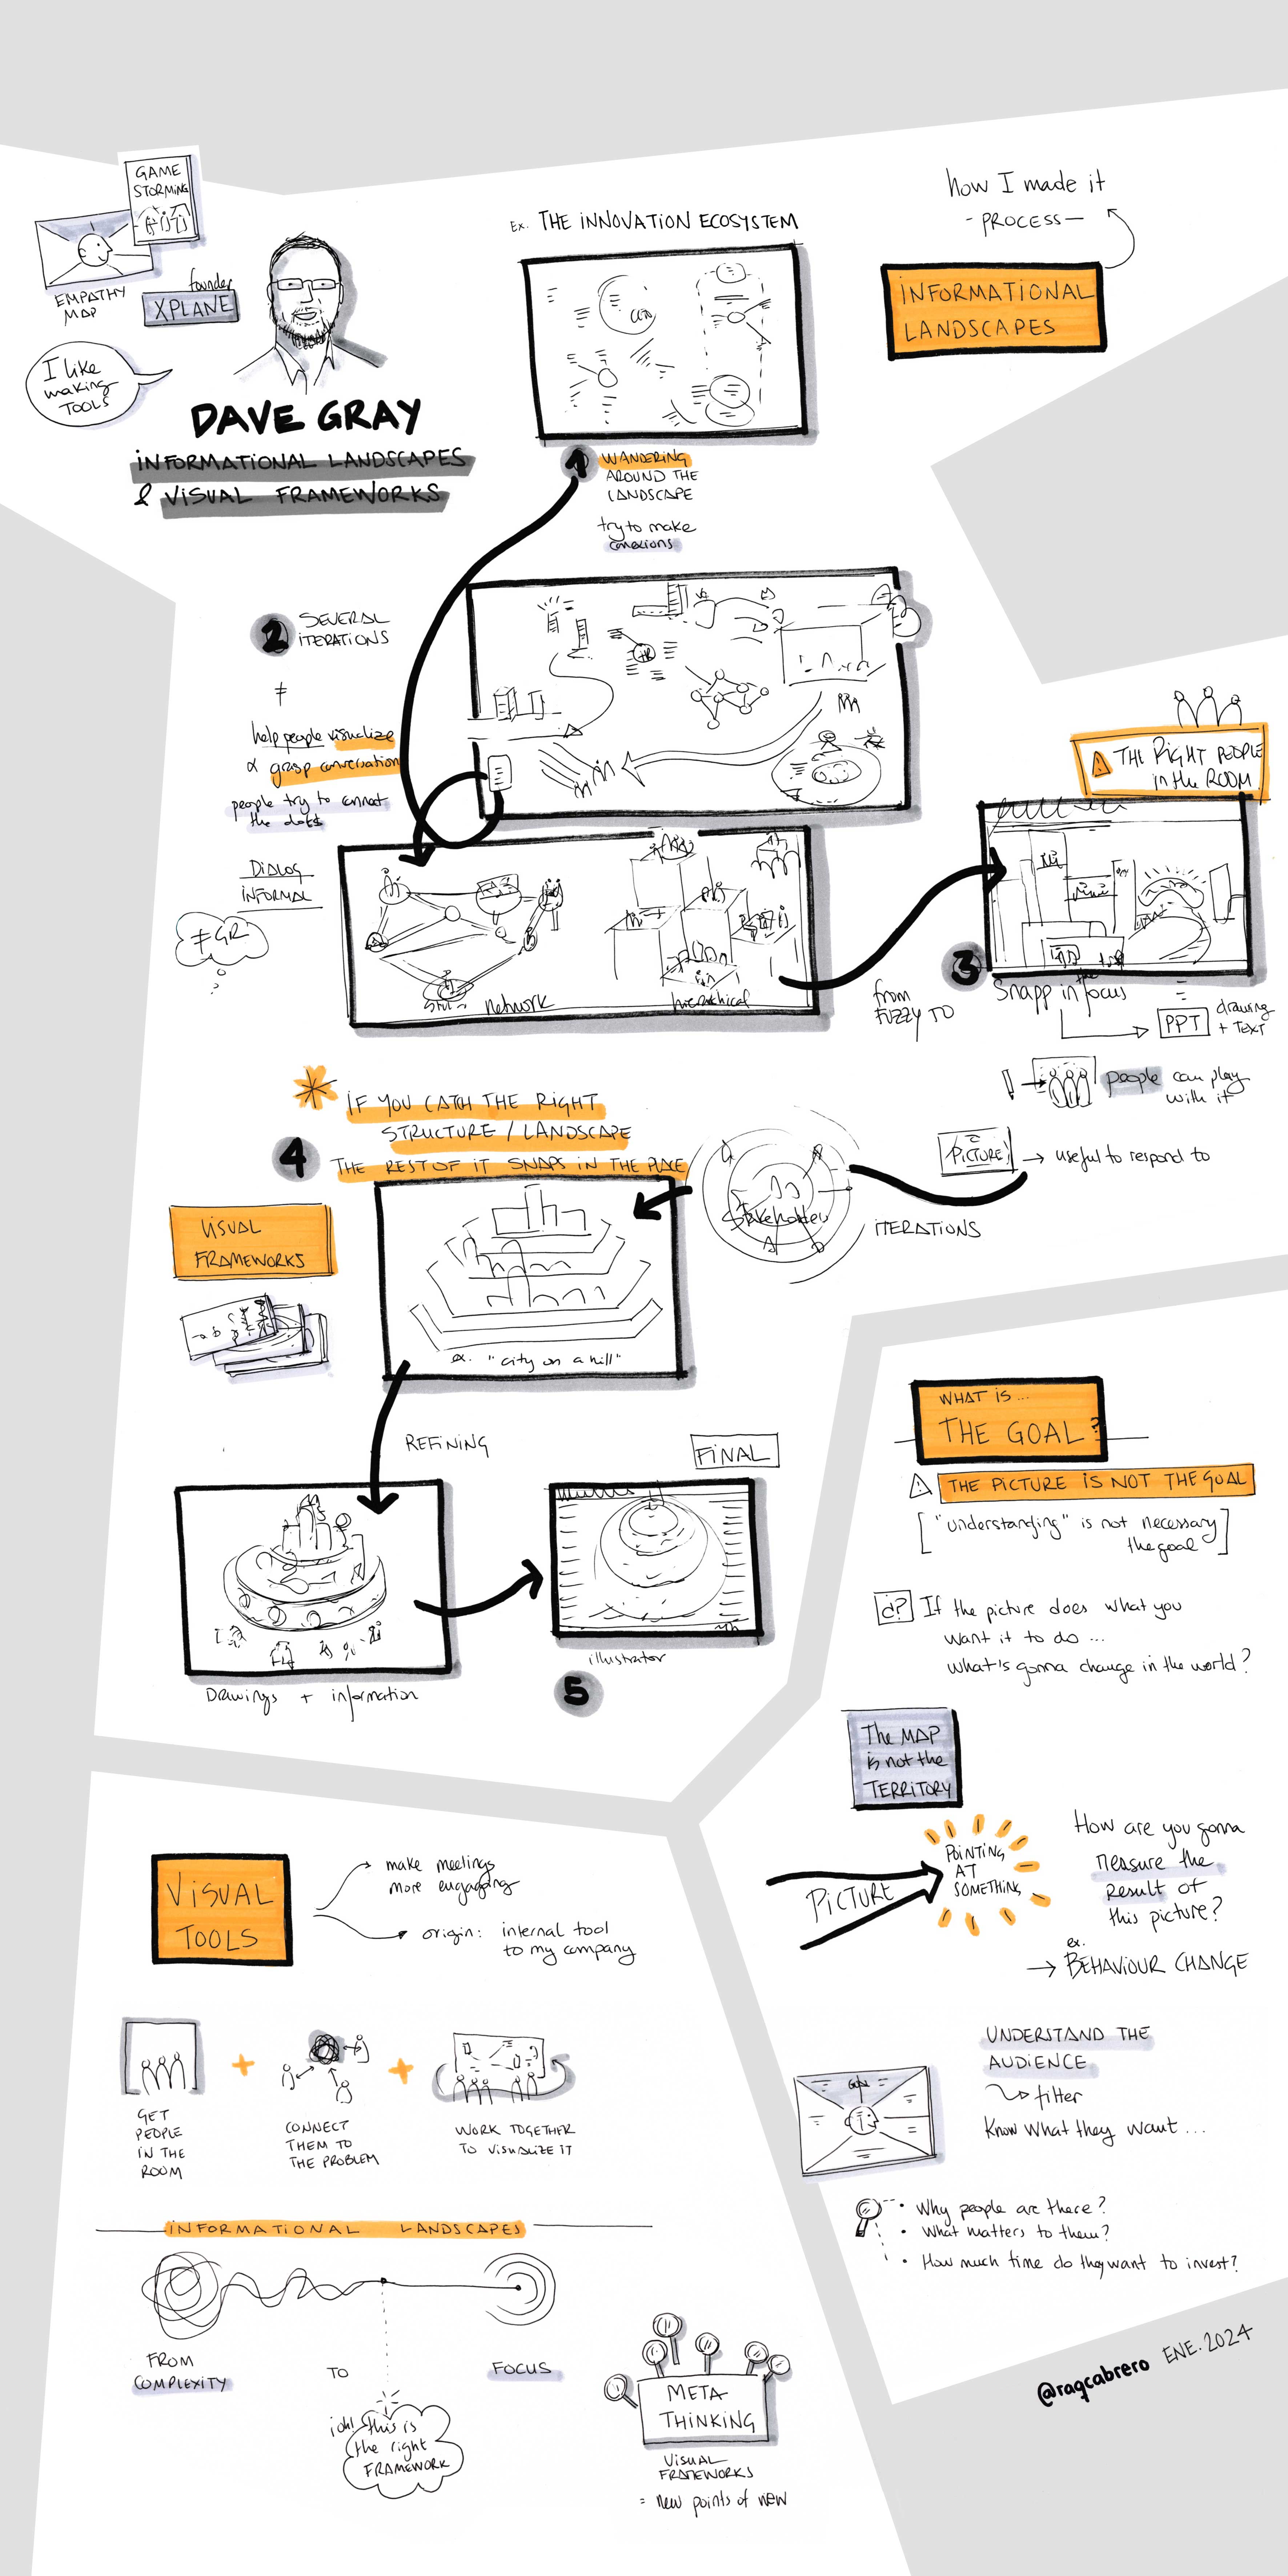 Visual Thinking - Sketchnoting - la imagen muestra el resumen visual de las ideas de la conferencia de Dave Gray sobre "Paisajes de Información".